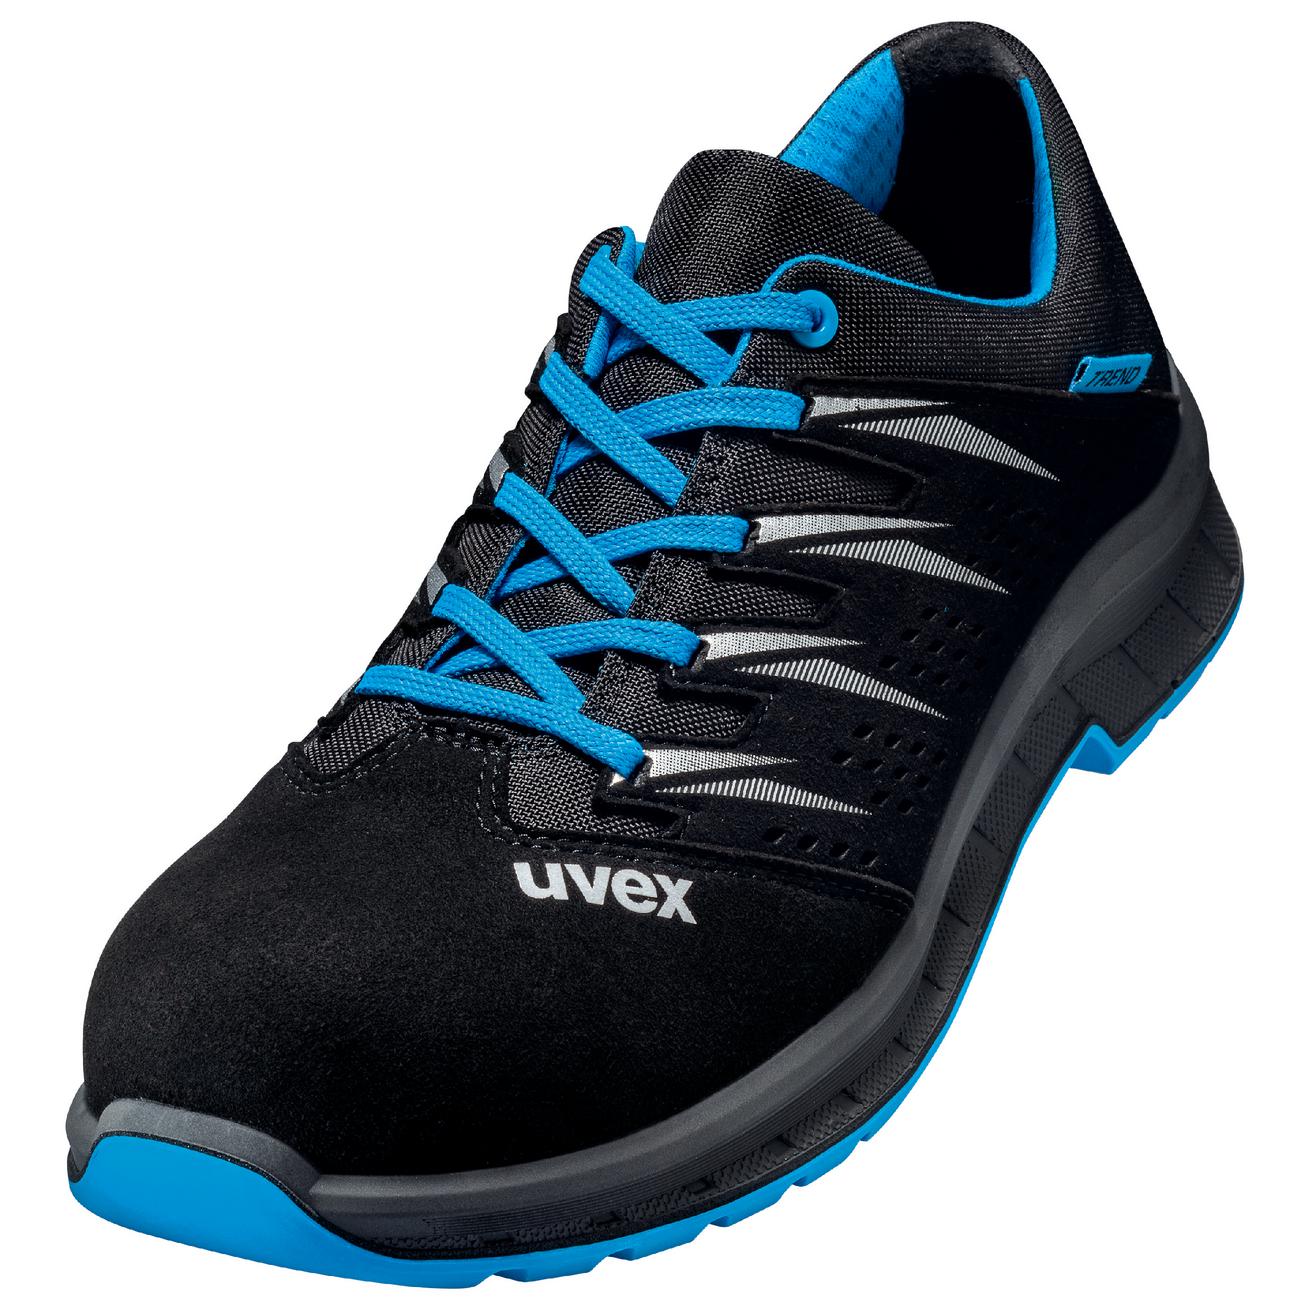 Perf. polobotka obuv uvex 2 trend, šíře 11, S1 SRC, černá/modrá 6937 Velikost: 40, Kód produktu: 6937840